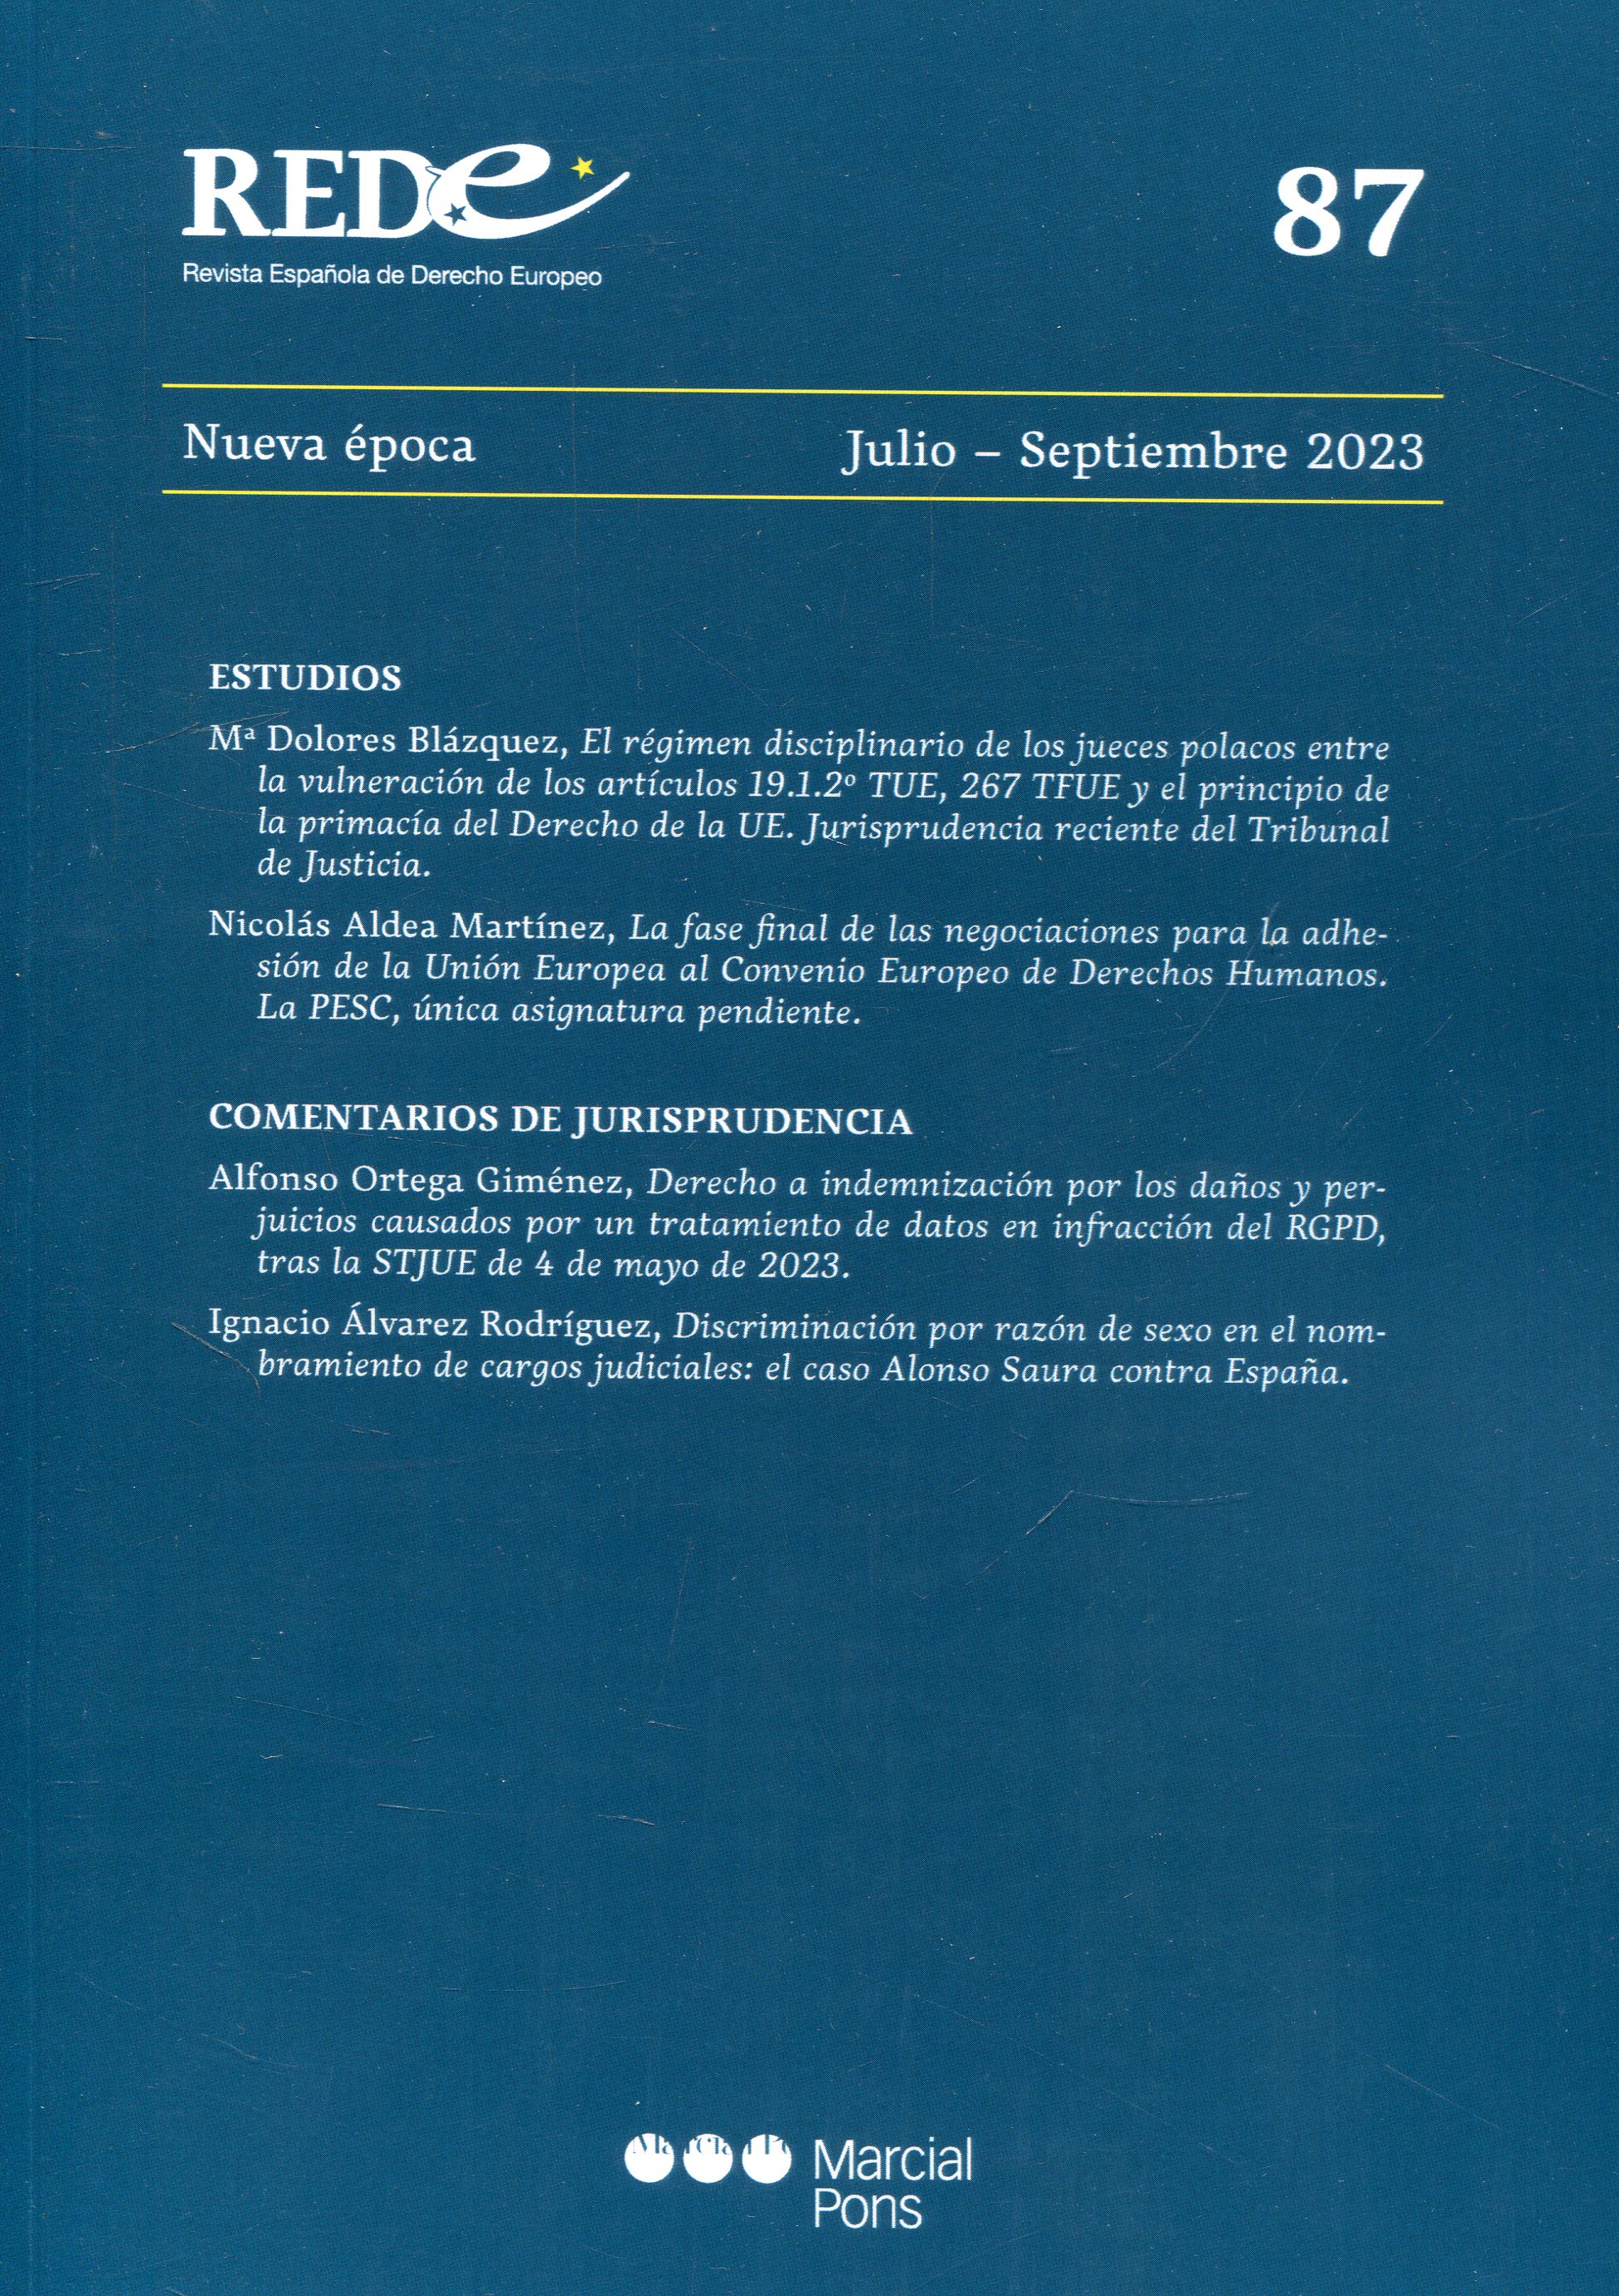 Revista Española de Derecho Europeo, Nº 87, Nueva época Julio-Septiembre 2023